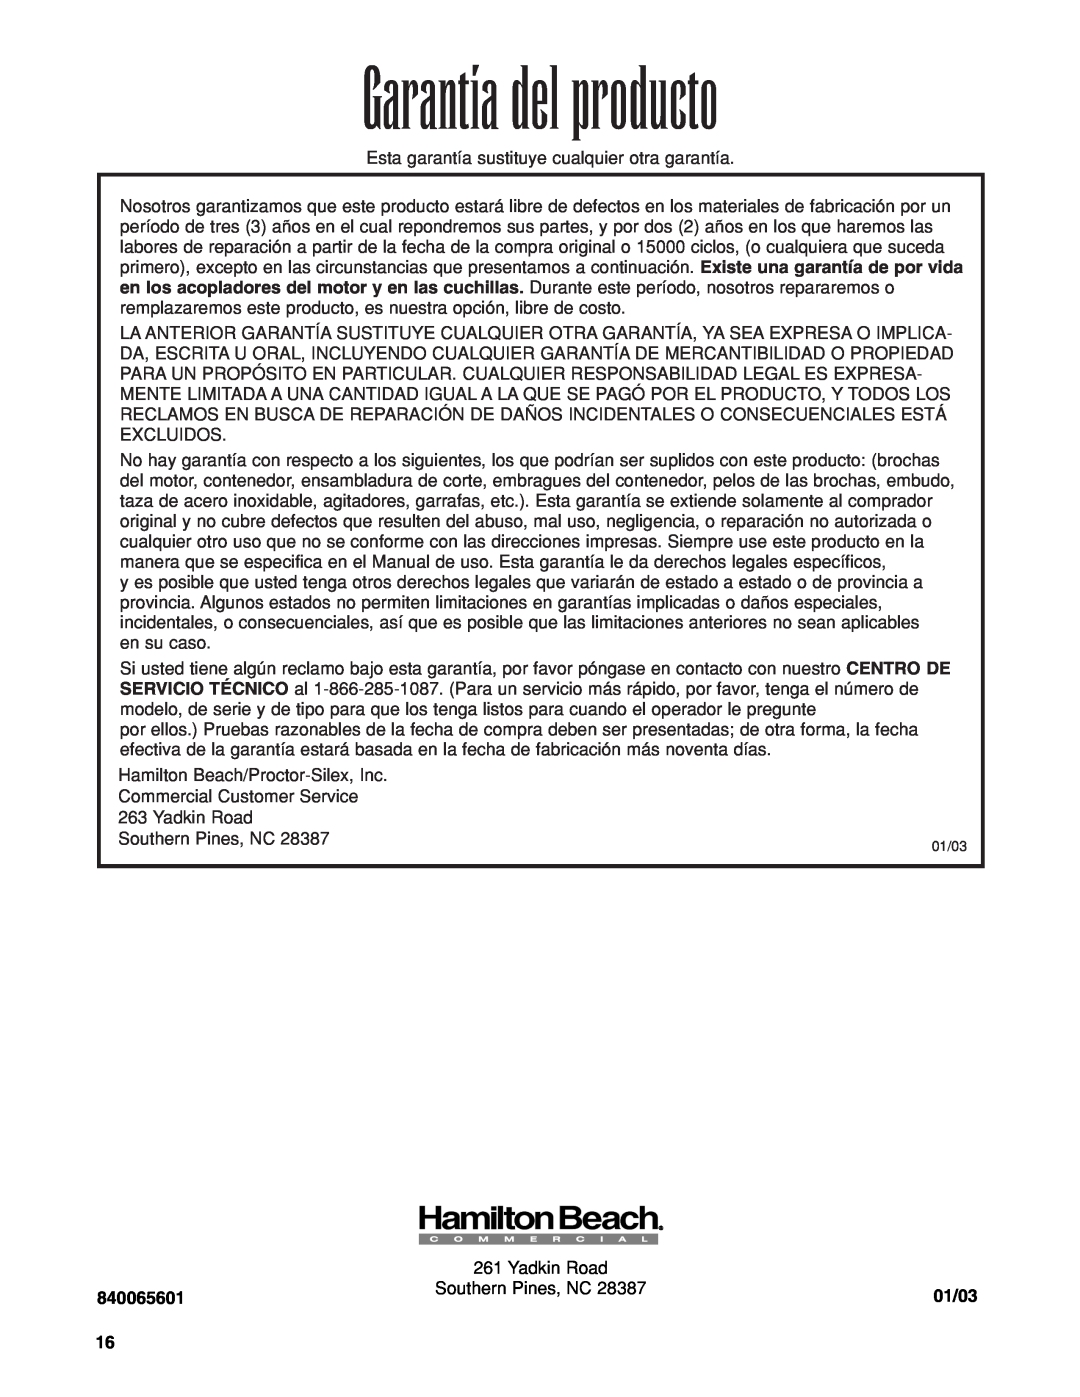 Hamilton Beach 840065601 operation manual Garantía del producto, 01/03 